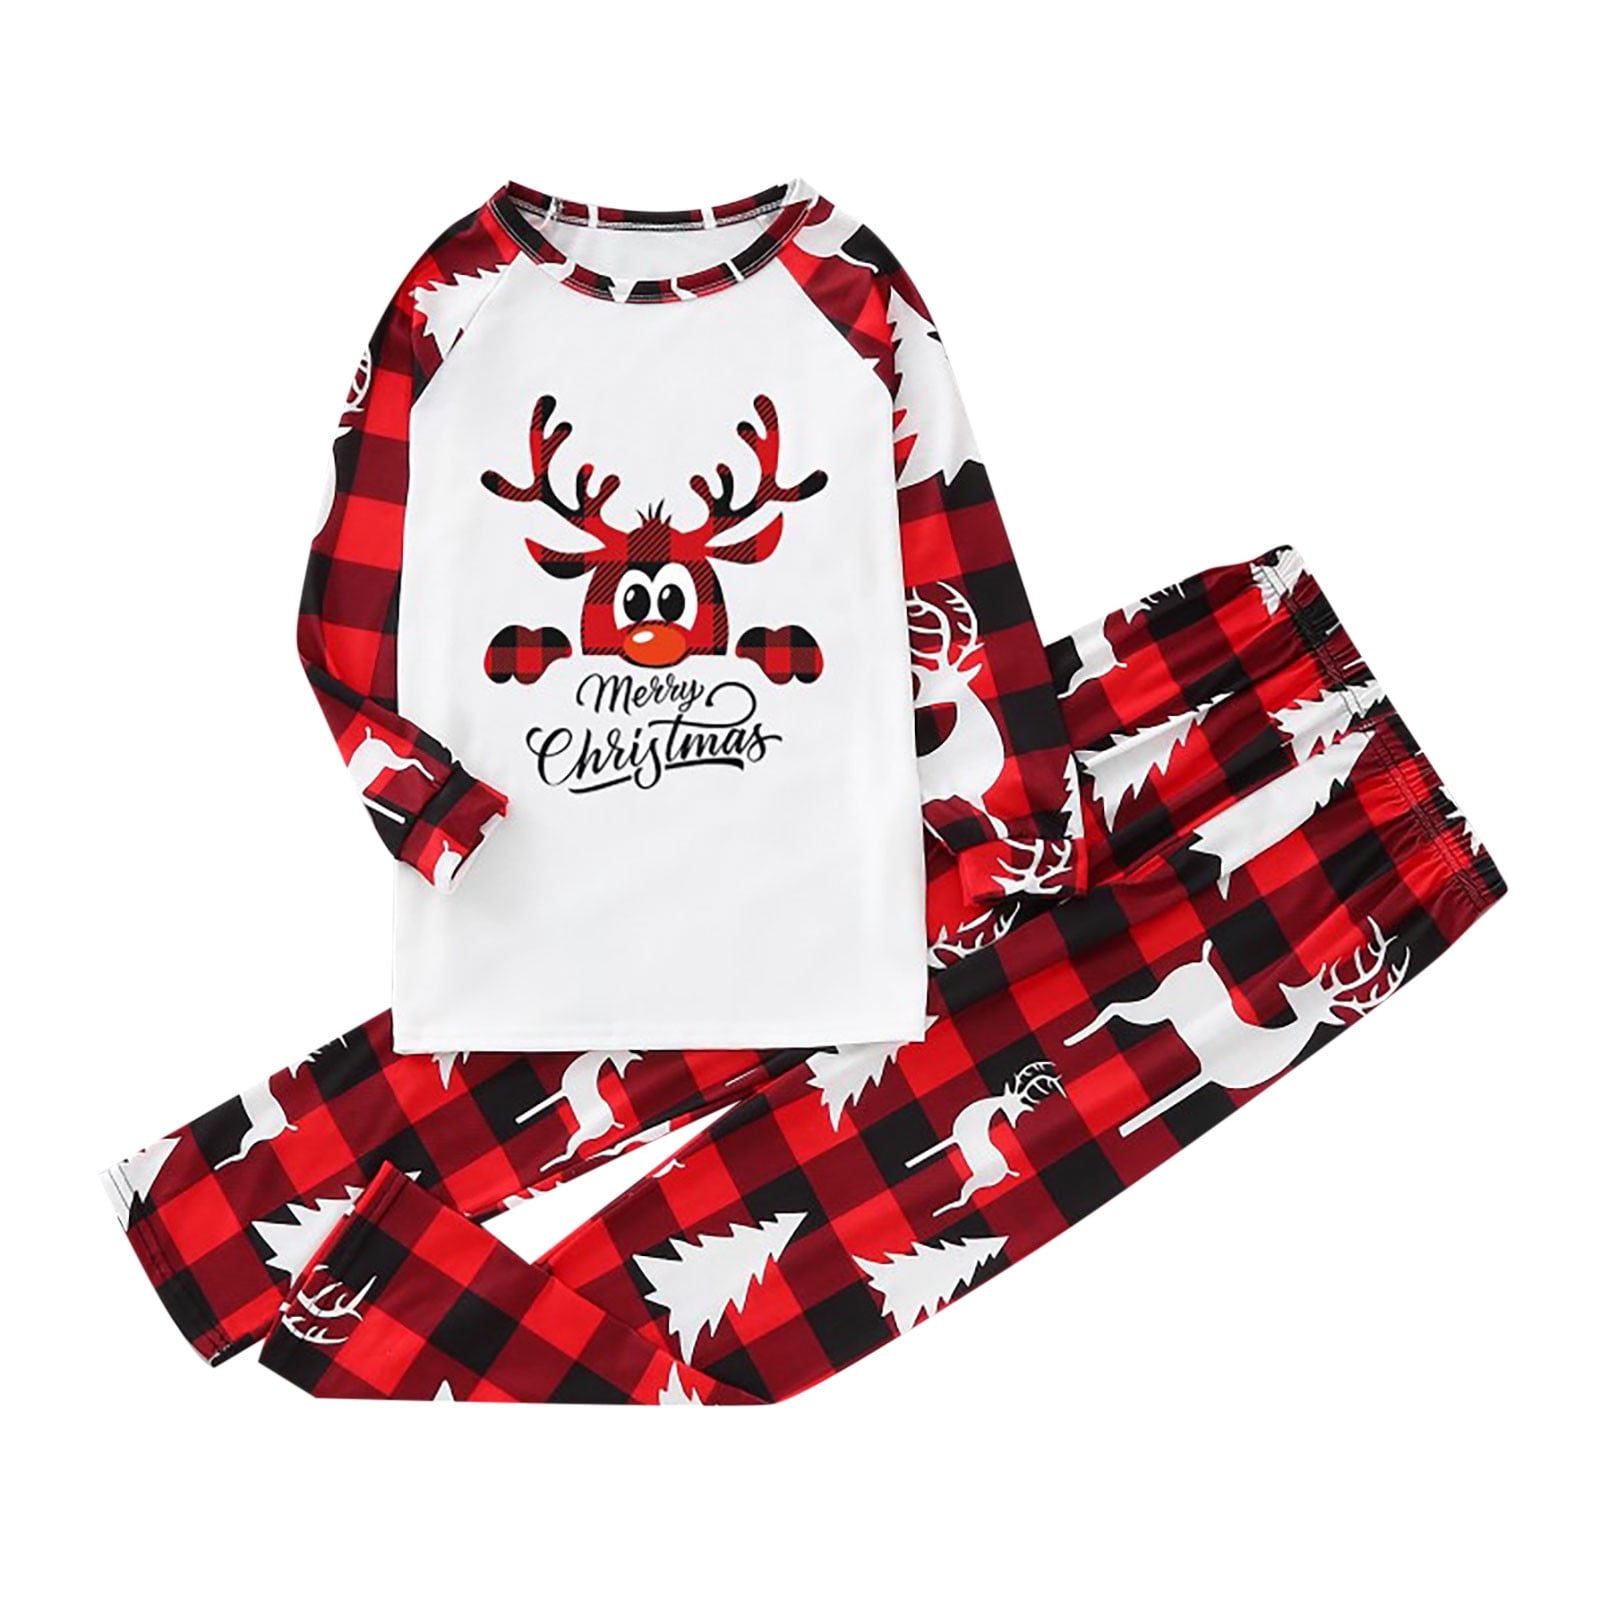 Matching Family Christmas Pajamas Set Christmas Pajamas Reindeer Printed Red Plaid Tops Long Pants Sleepwear Sets 